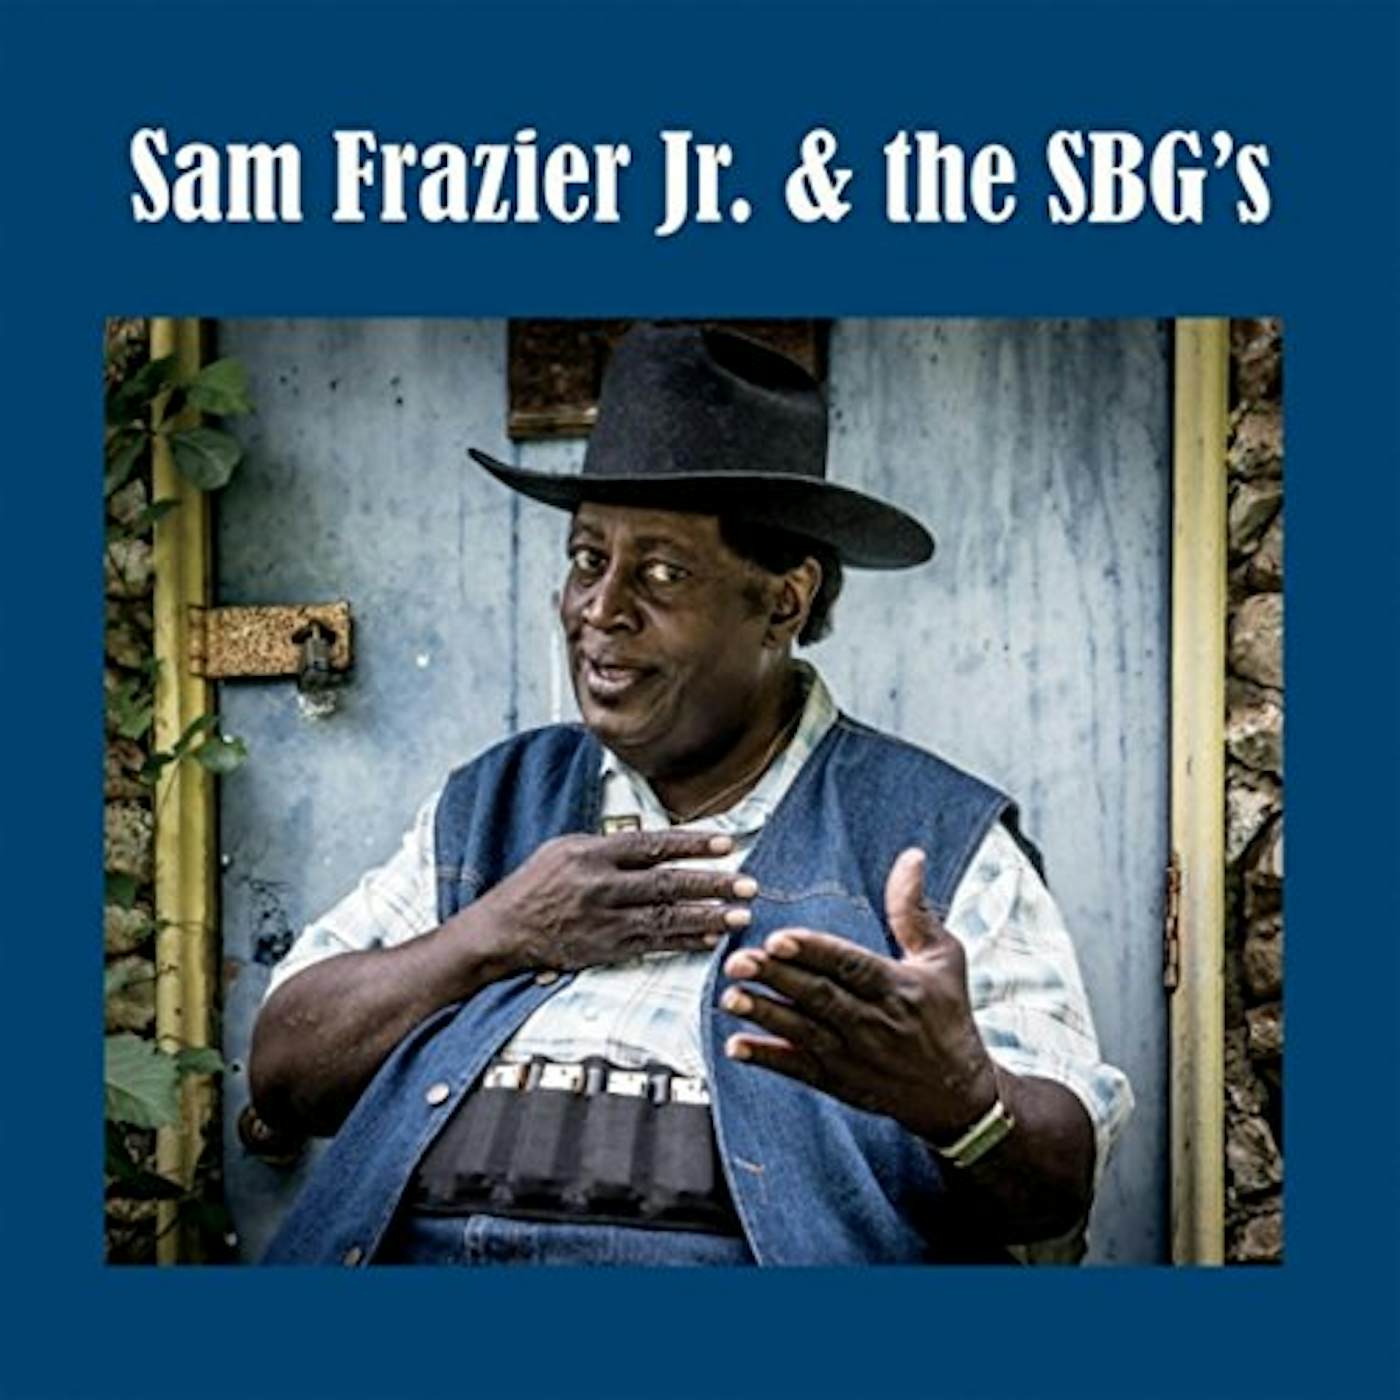 Sam Frazier, Jr. & THE SBG'S CD